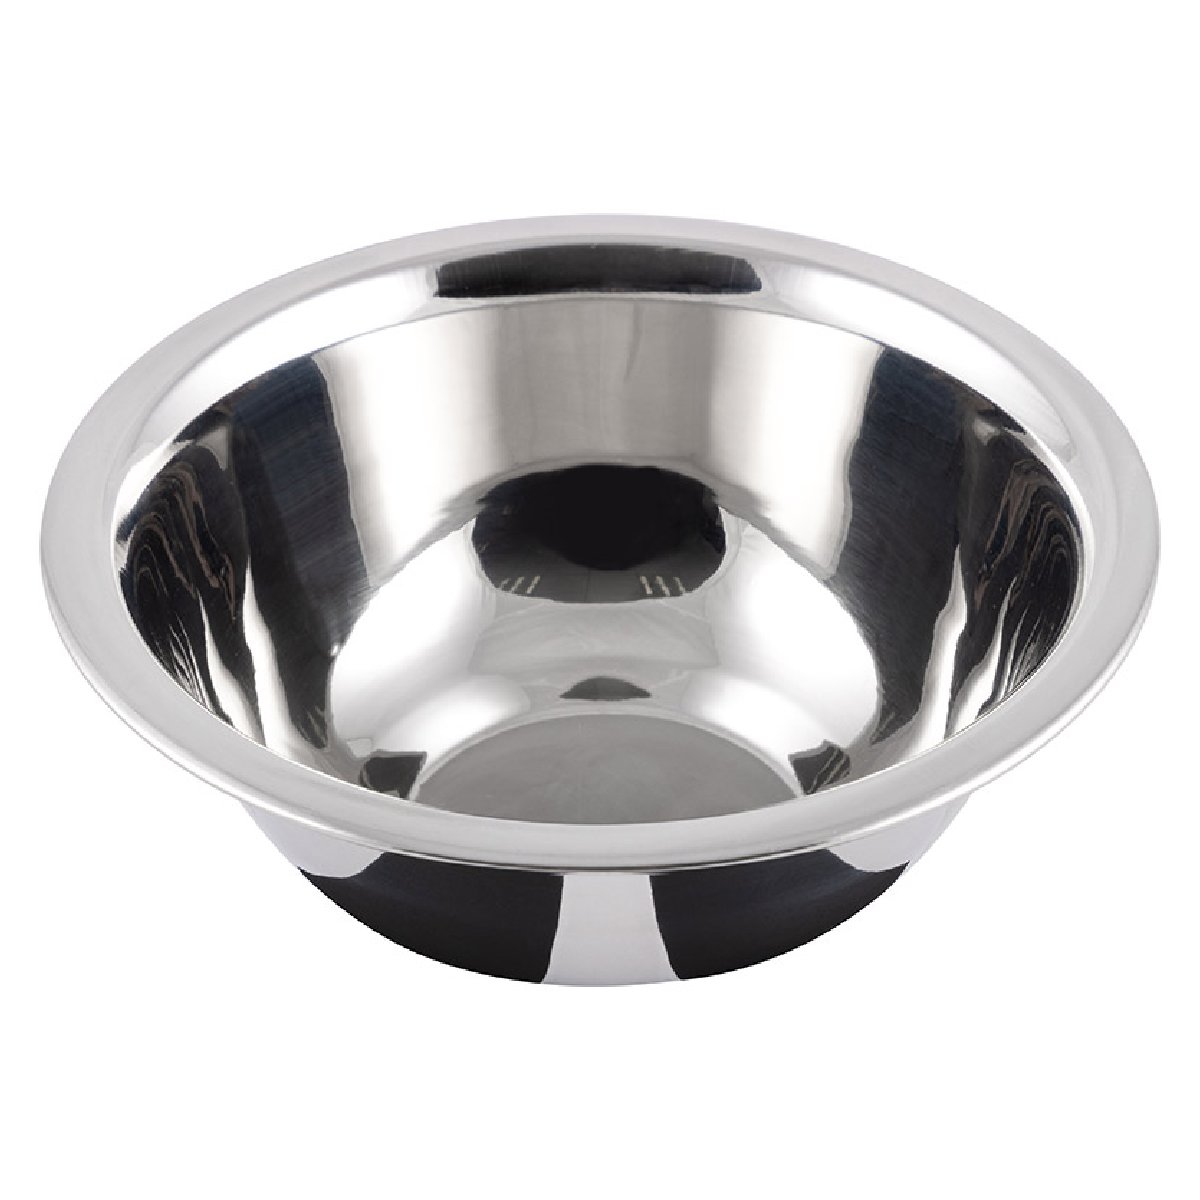 Миска Bowl-Roll-14, объем 450 мл из нержавеющей стали, зеркальная полировка, диа 14 см (103824)